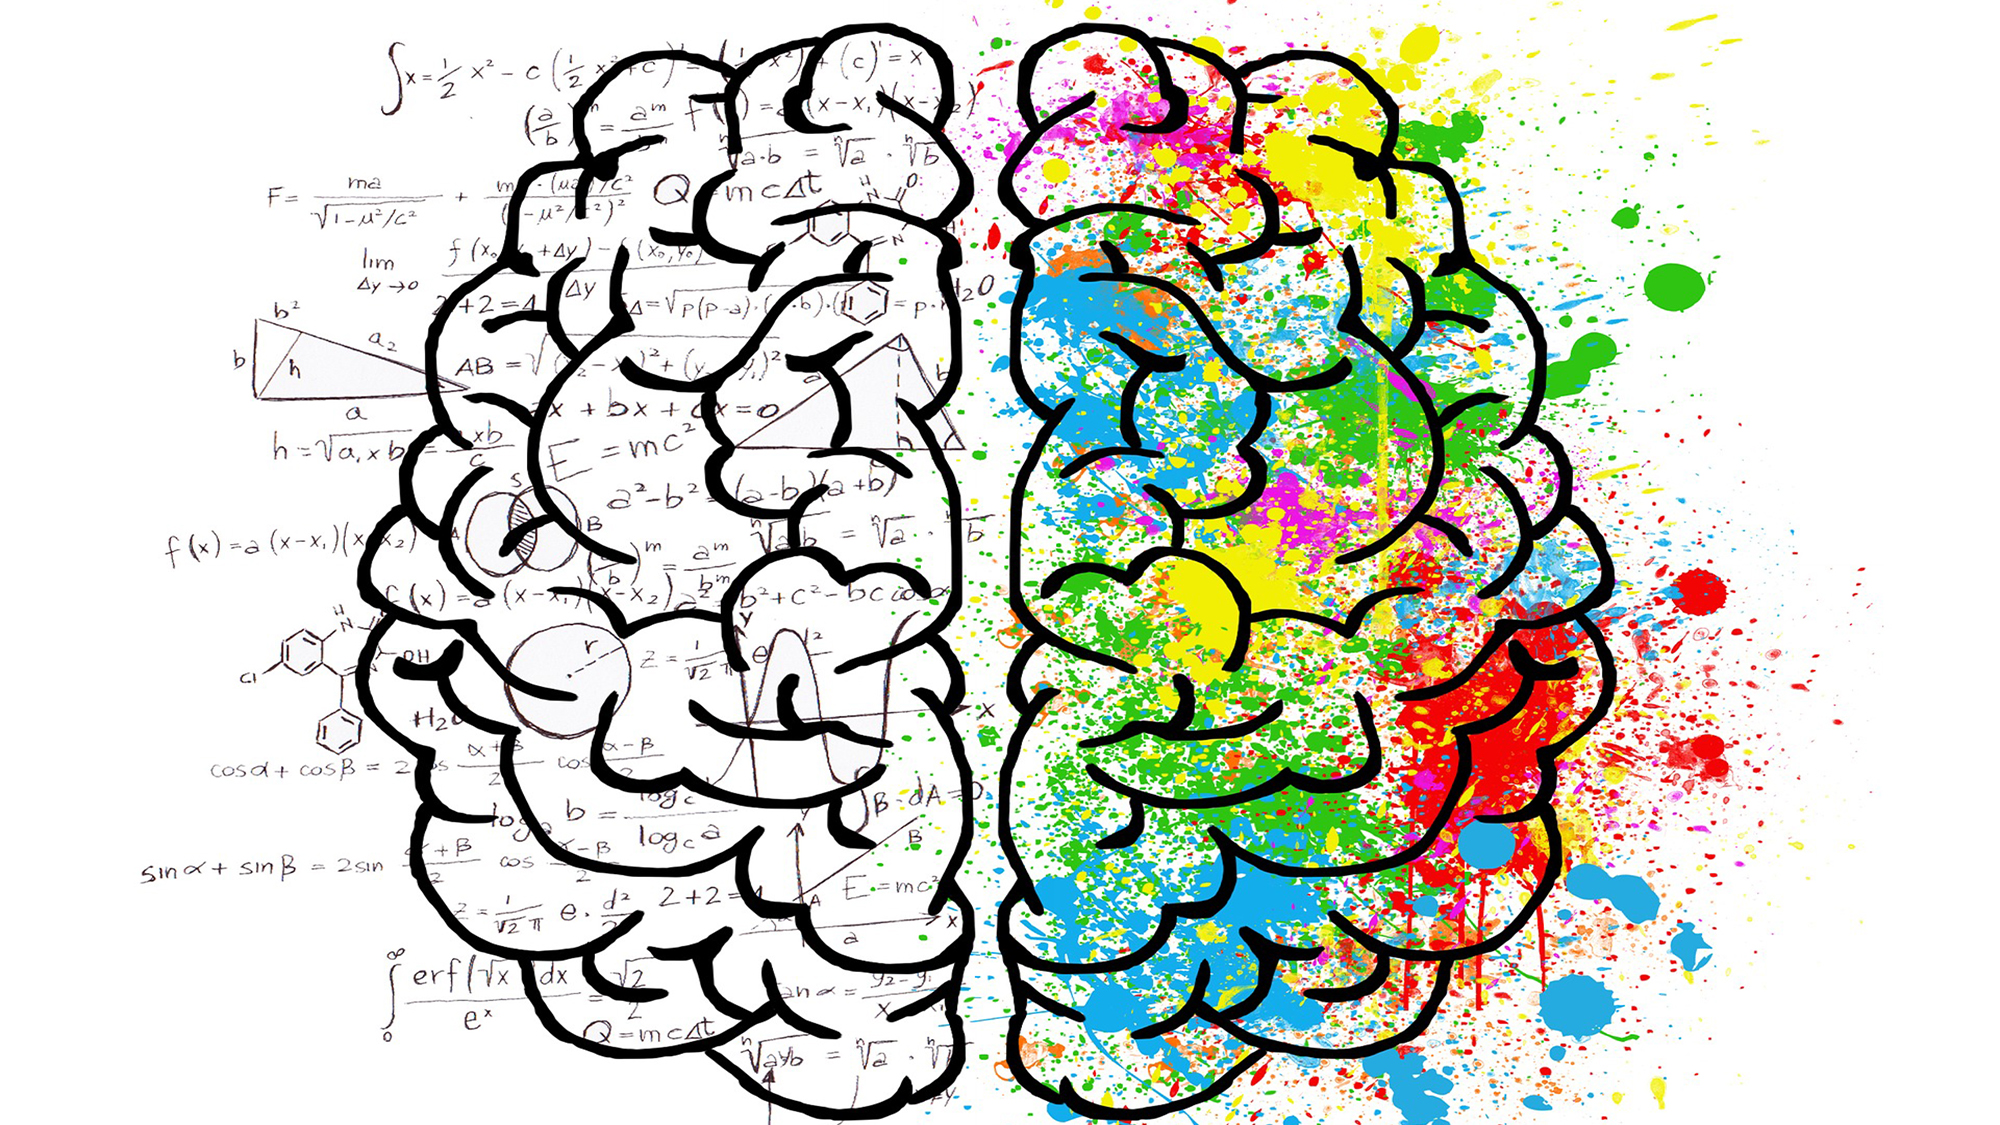 El cerebro: el hemisferio derecho registra las memorias visuales y espaciales (dibujos), y el izquierdo registra las memorias verbales (palabras, números). Imagen de Pixabay.